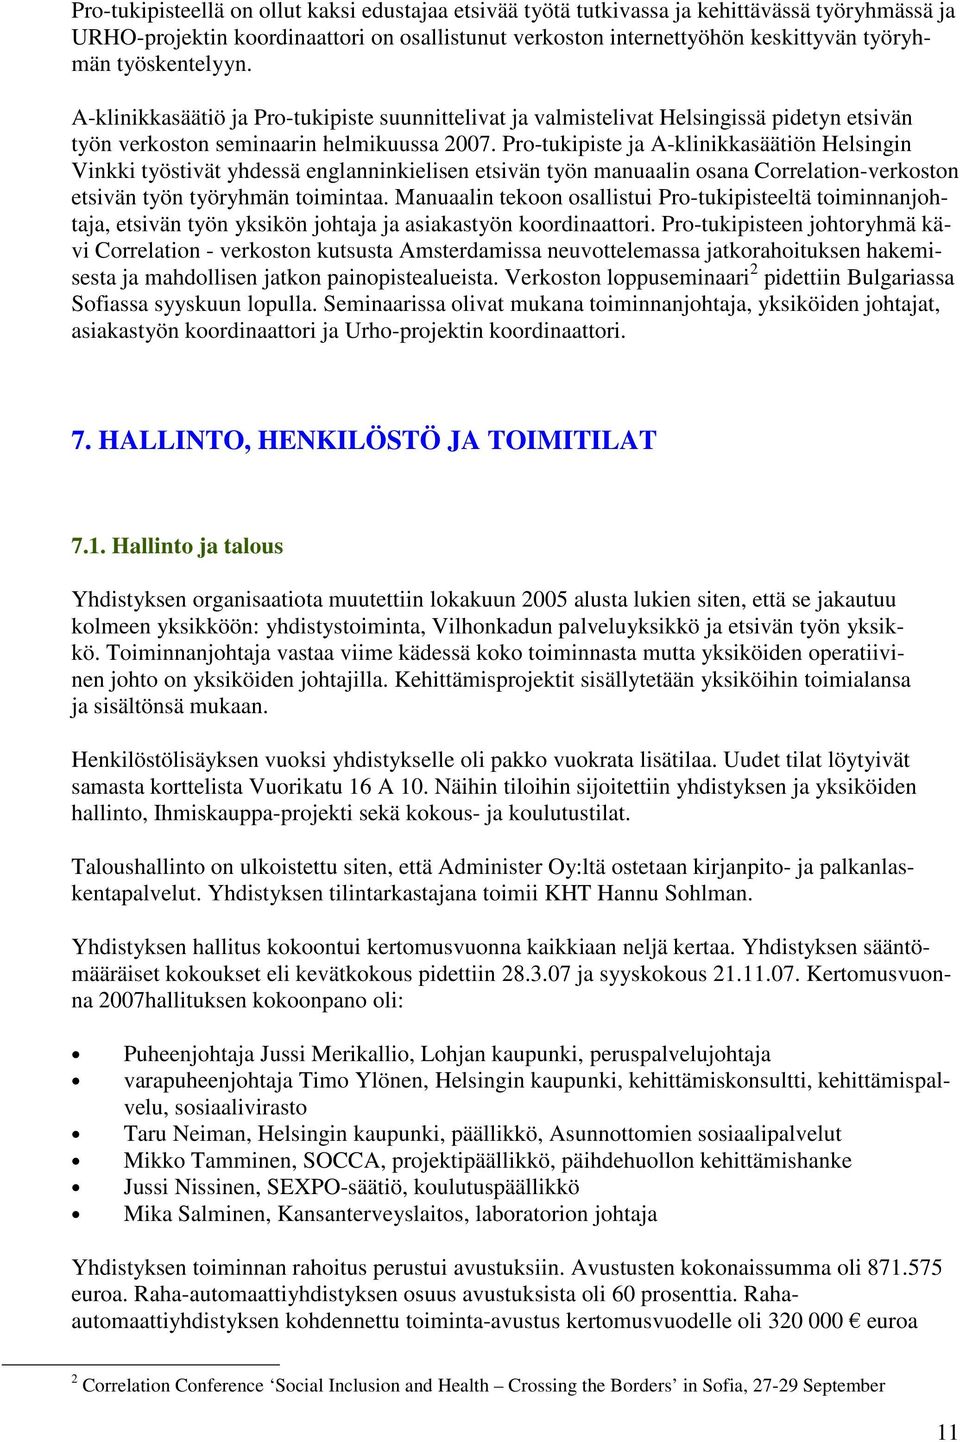 Pro-tukipiste ja A-klinikkasäätiön Helsingin Vinkki työstivät yhdessä englanninkielisen etsivän työn manuaalin osana Correlation-verkoston etsivän työn työryhmän toimintaa.